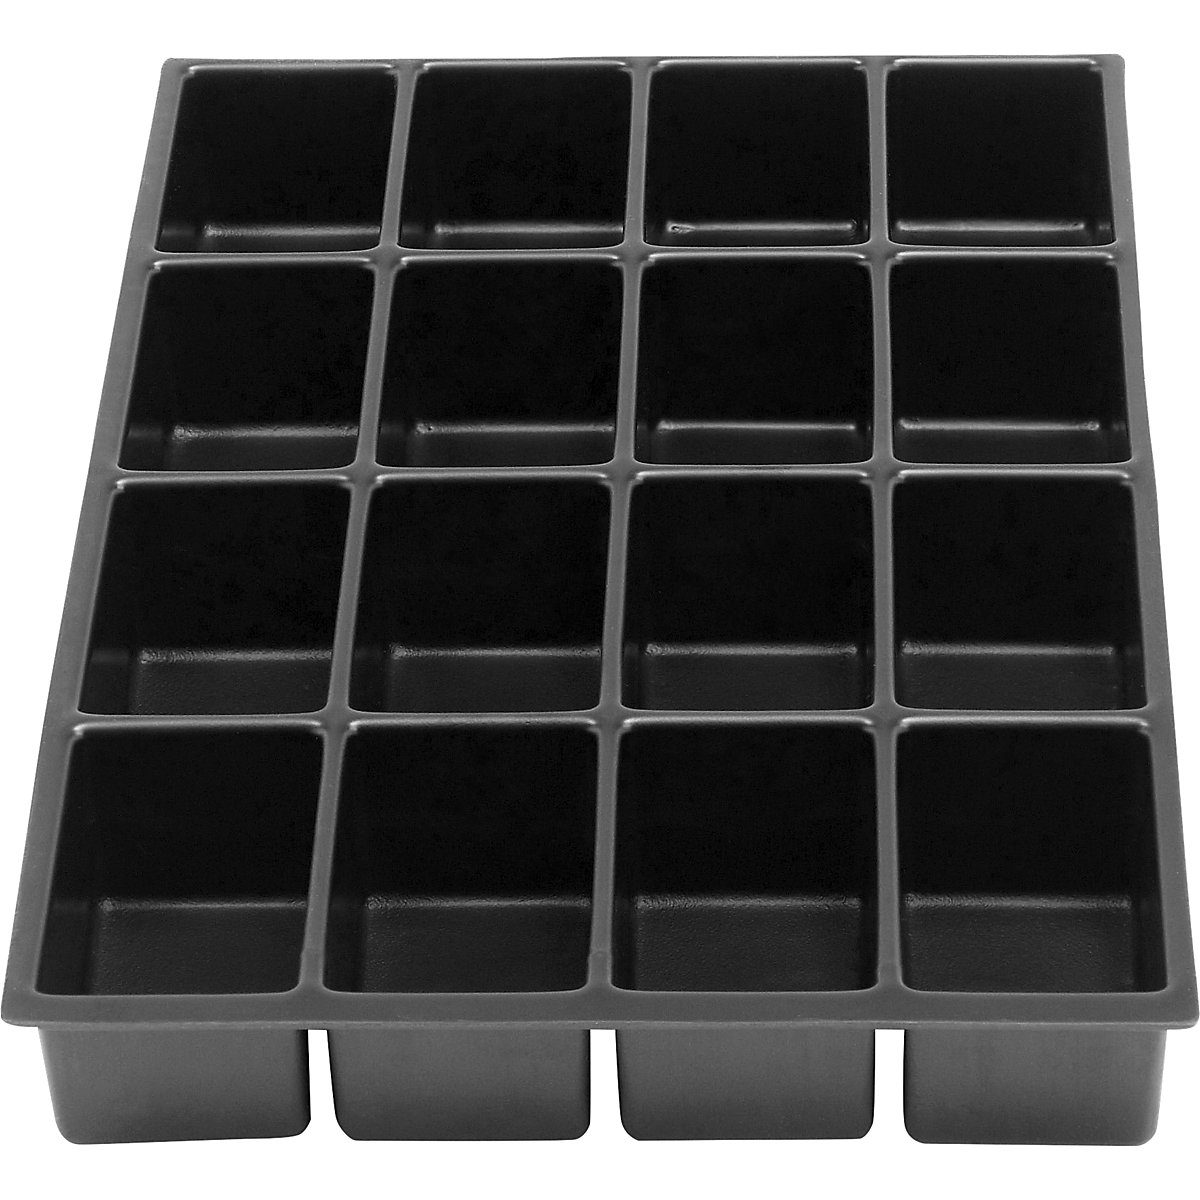 Compartimentation pour tiroir MultiDrawer™ – BISLEY, format A4, hauteur 48 mm, 16 cases